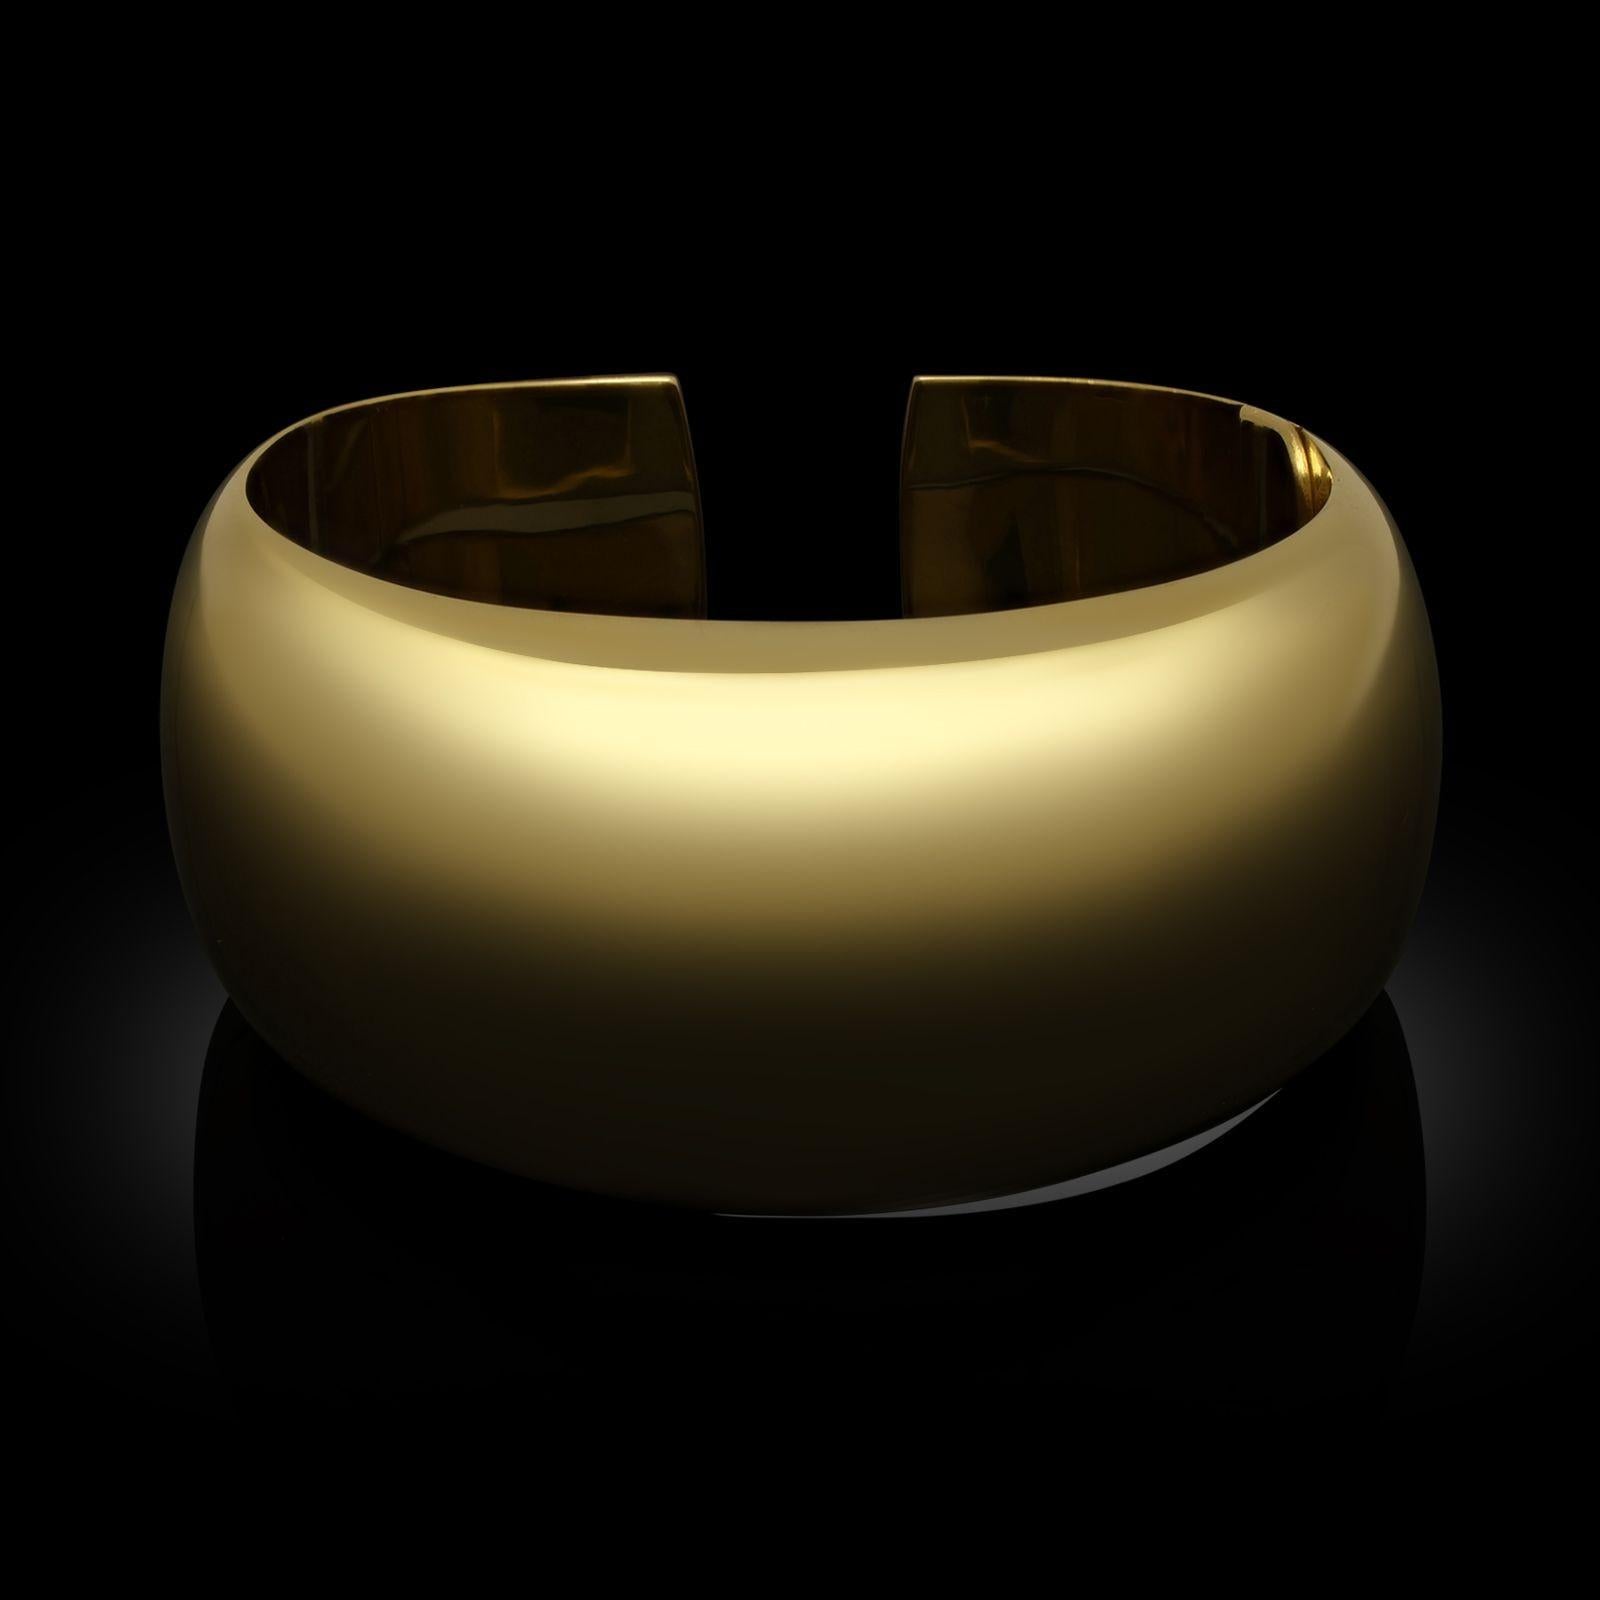 Ein goldenes Manschettenarmband von Carlo Weingrill für Tiffany & Co. um das Jahr 2000. Die Manschette hat ein gewölbtes Profil, das sich nach hinten verjüngt, ist aus poliertem 18-karätigem Gelbgold gefertigt und hat ein diskretes Scharnier an